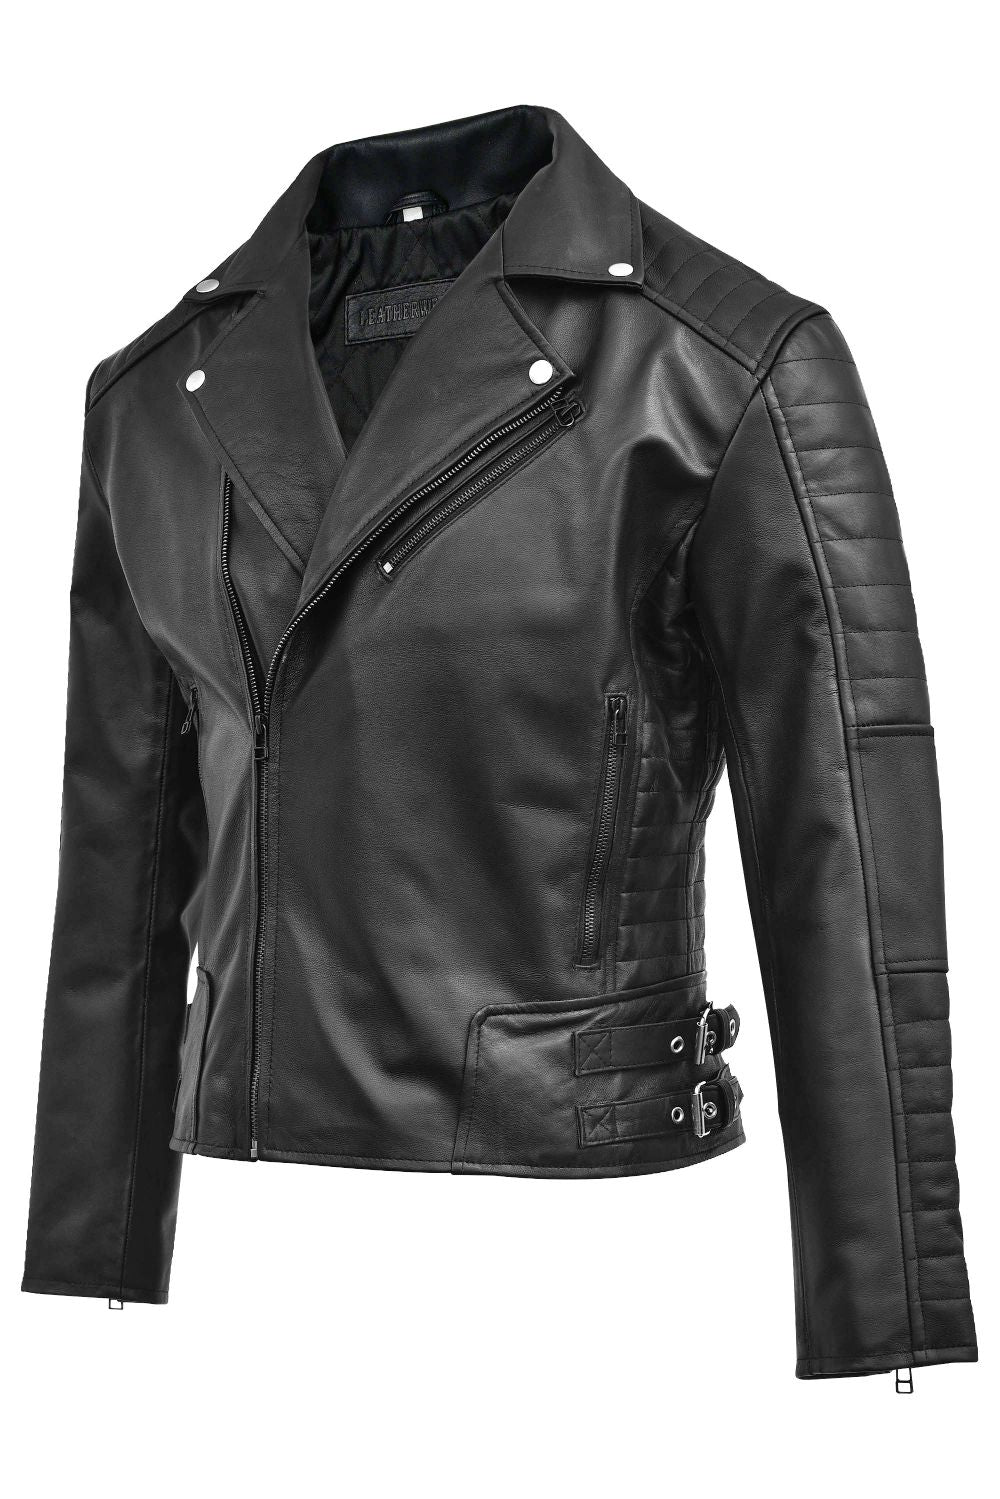  black biker leather jacket